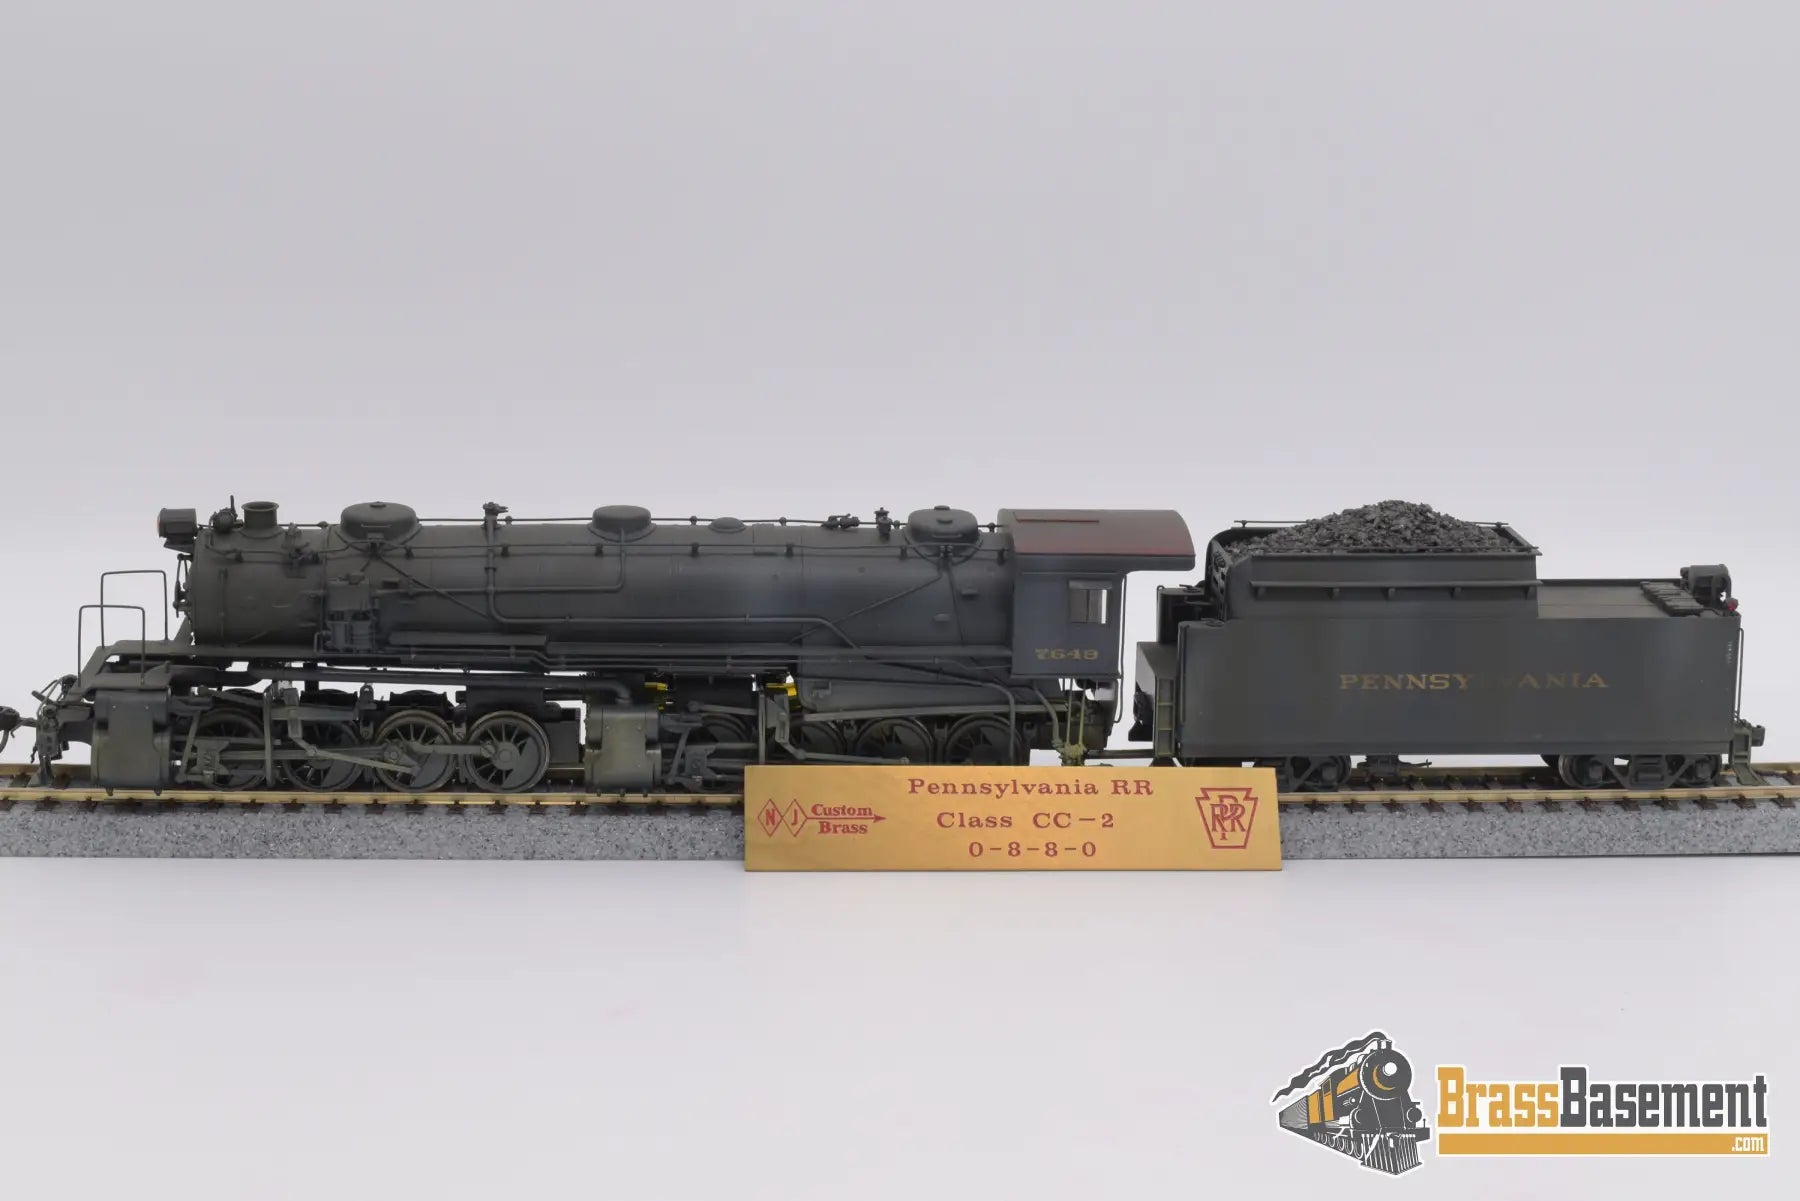 Ho Brass - Njcb Pennsylvania Rr 0 - 8 - 8 - 0 Cc - 2 C/P Fair Steam